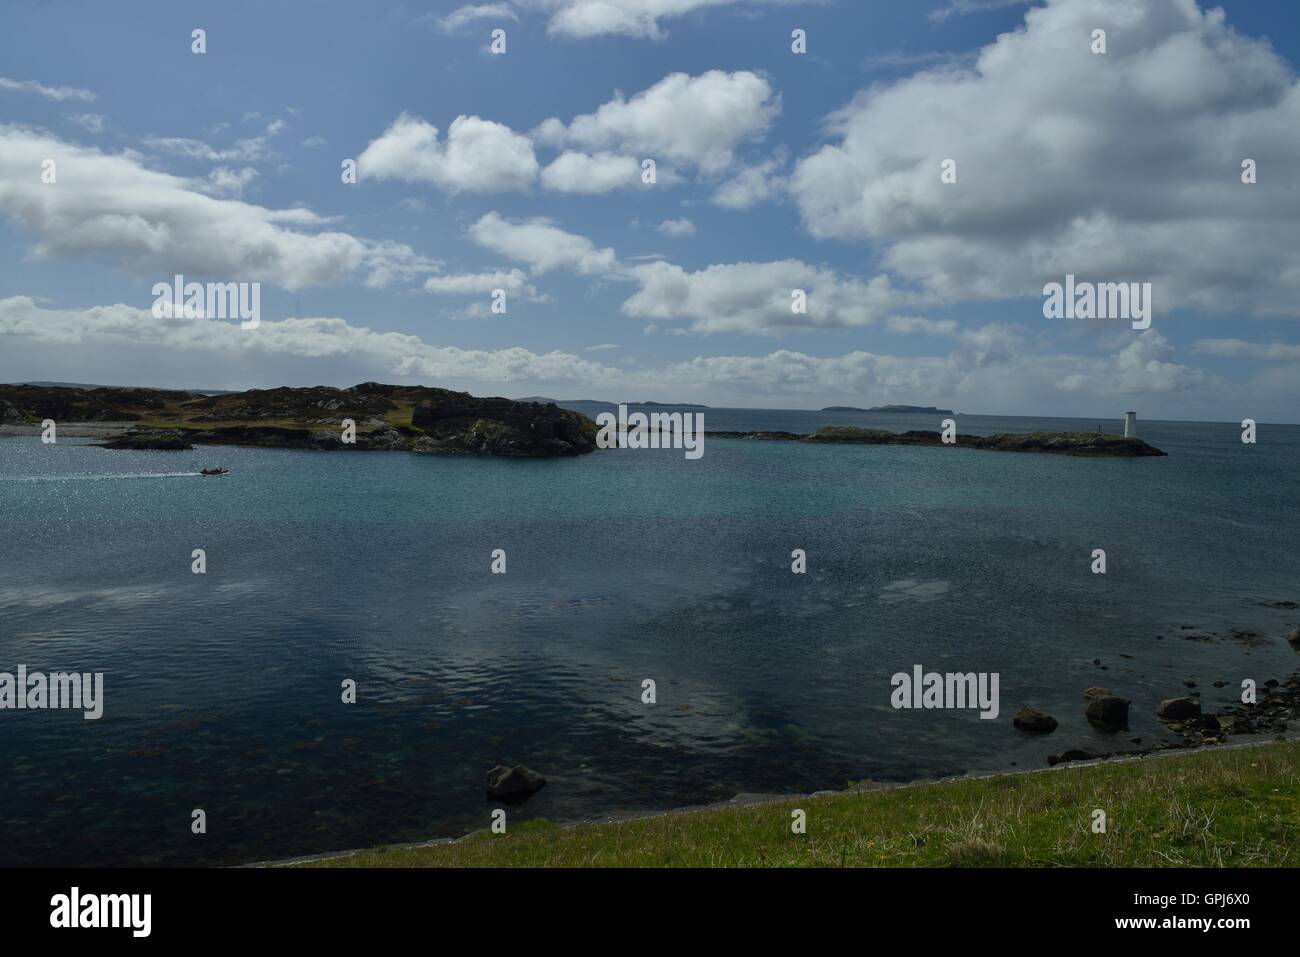 Inishbofin es una isla irlandesa en el Condado de Galway y a 8 km de la costa de Connemara. - Île irlandaise située dans le comté de Galway, Iuna isla irlandesa. Foto de stock